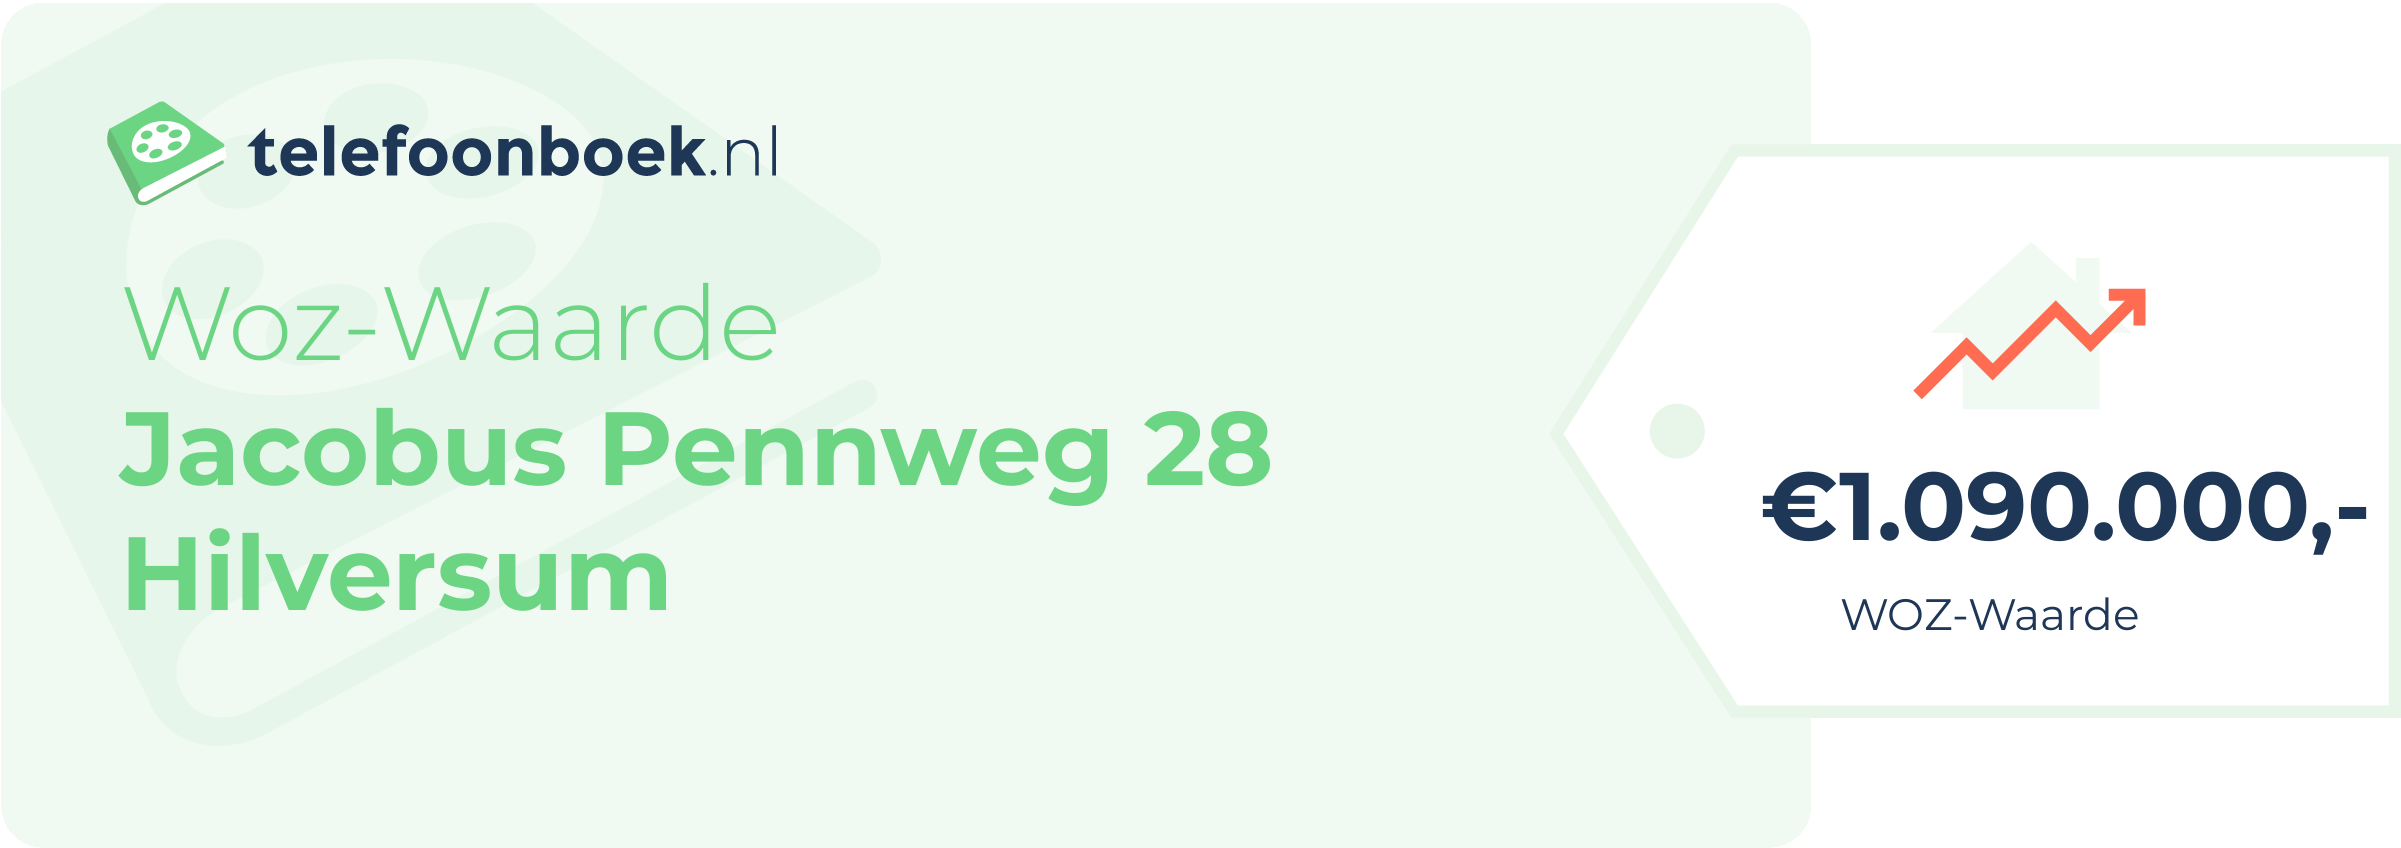 WOZ-waarde Jacobus Pennweg 28 Hilversum